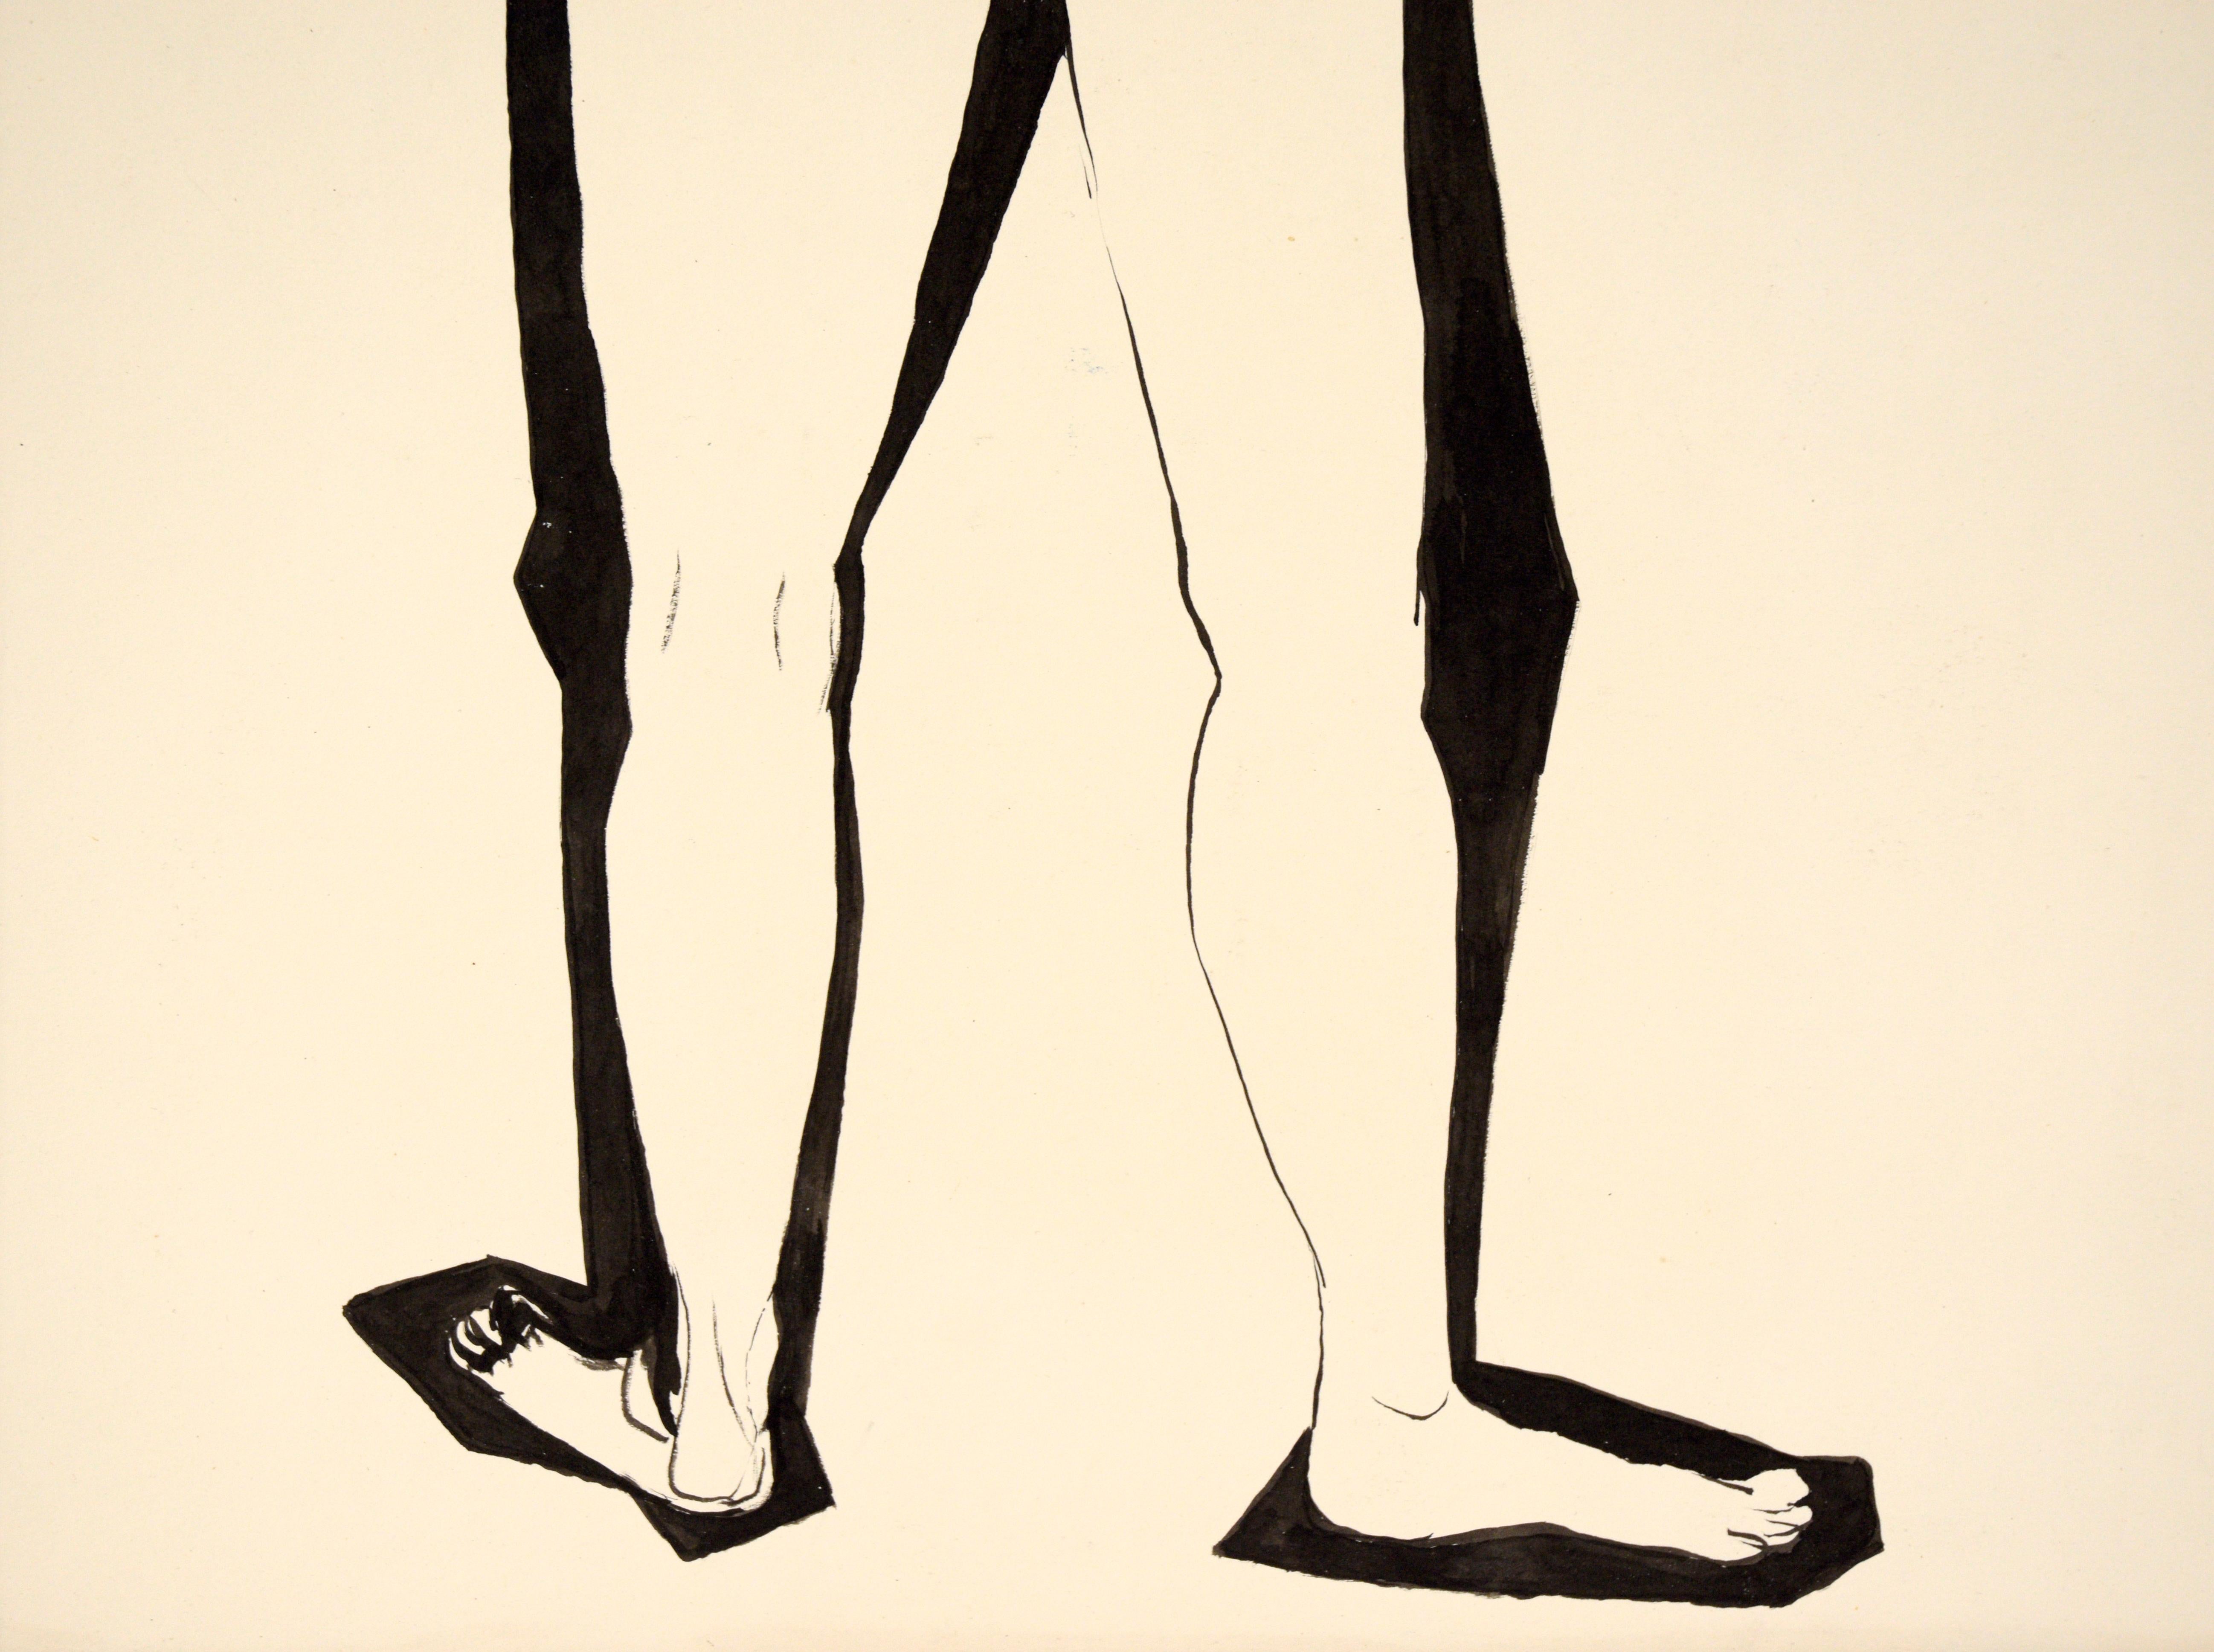 Moderne abstrahierte figurative Aktstudie in kräftiger schwarzer Tusche von Louis Nadalini (Amerikaner, 1927-1995). Signiert in der linken oberen Ecke unter der Matte: 